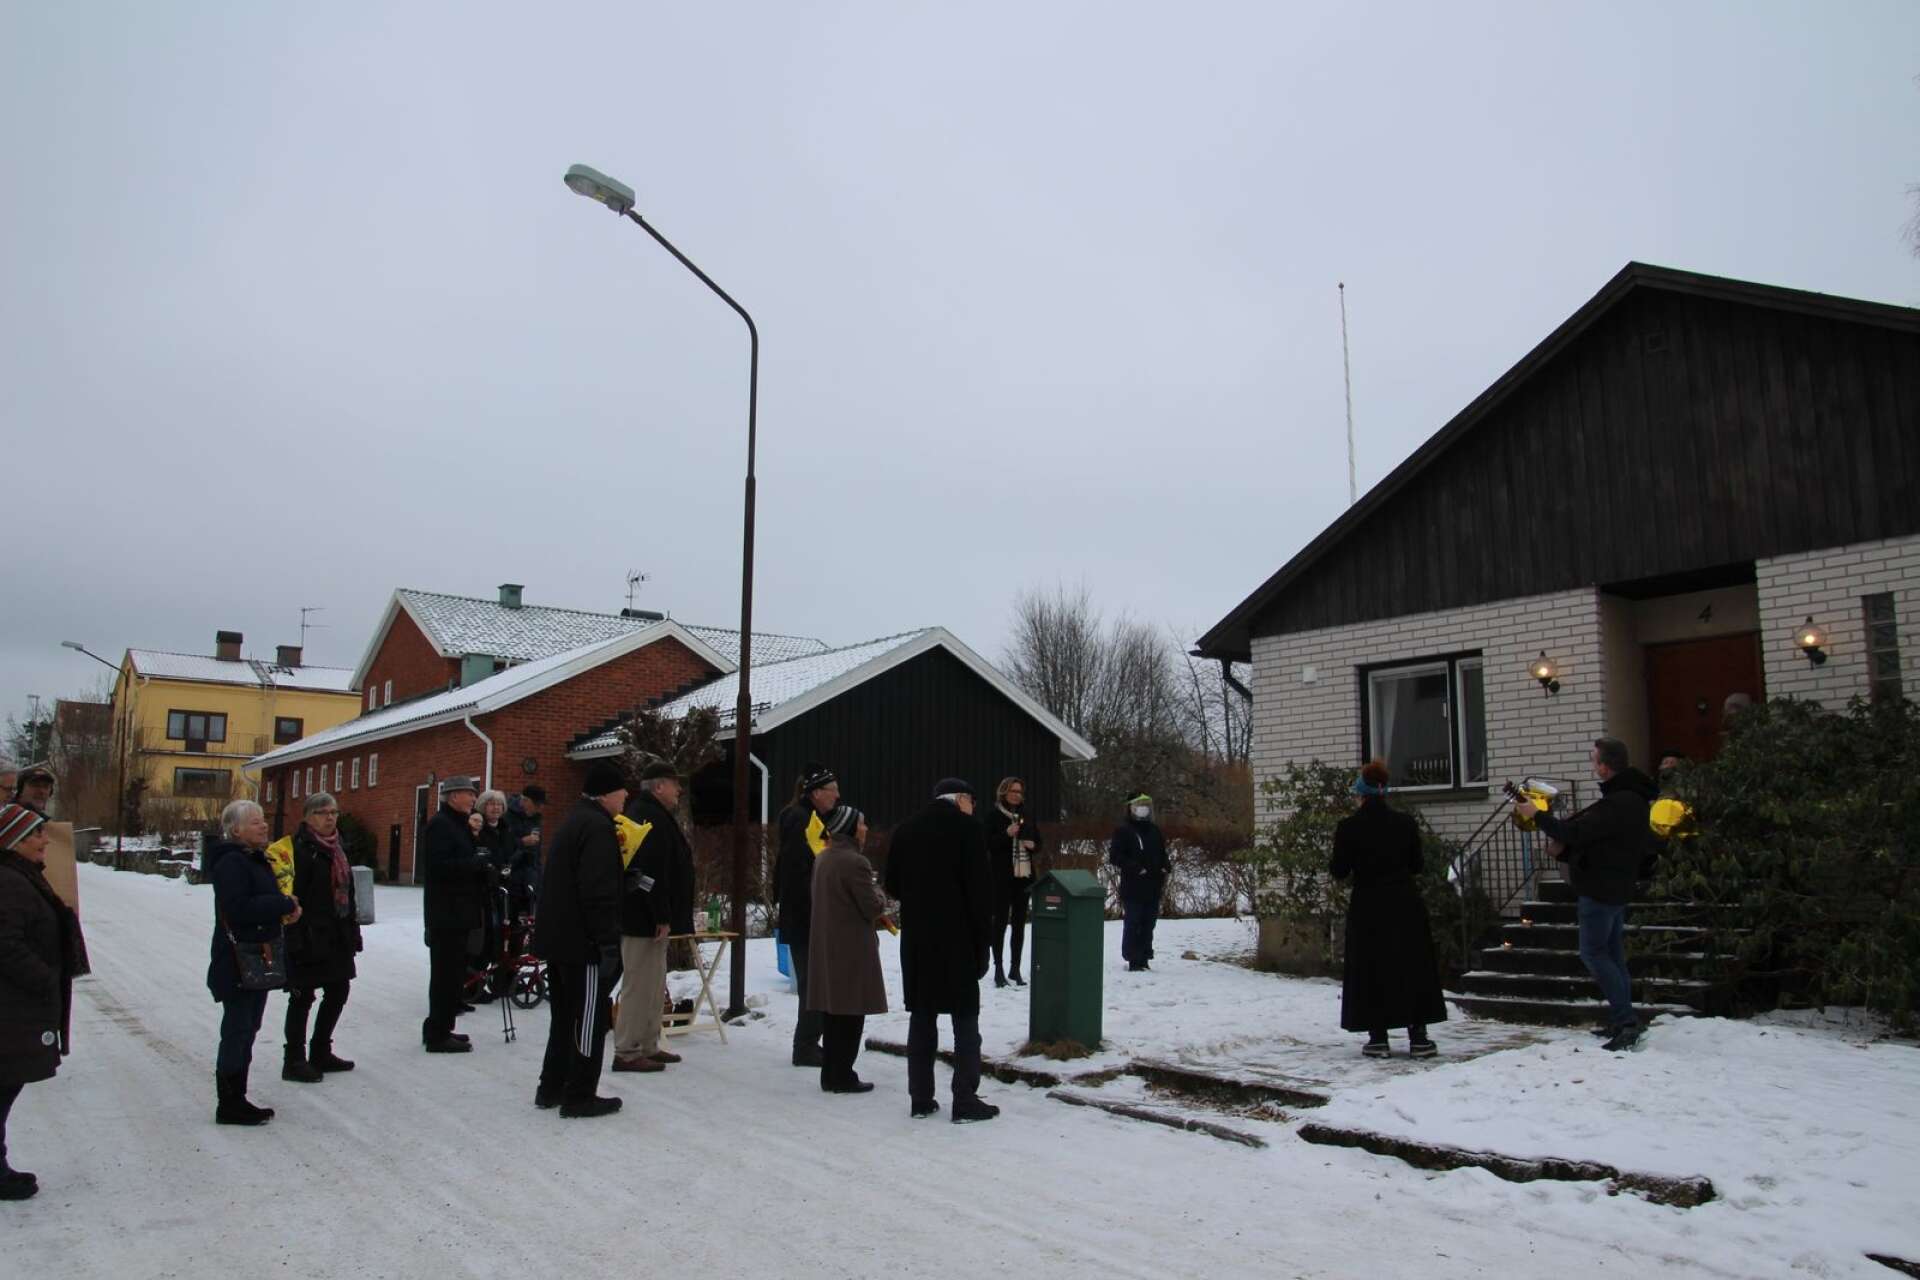 Ett tjugotal firare väntade utanför huset när Lars-Göran och Solveig klev ut på given signal.